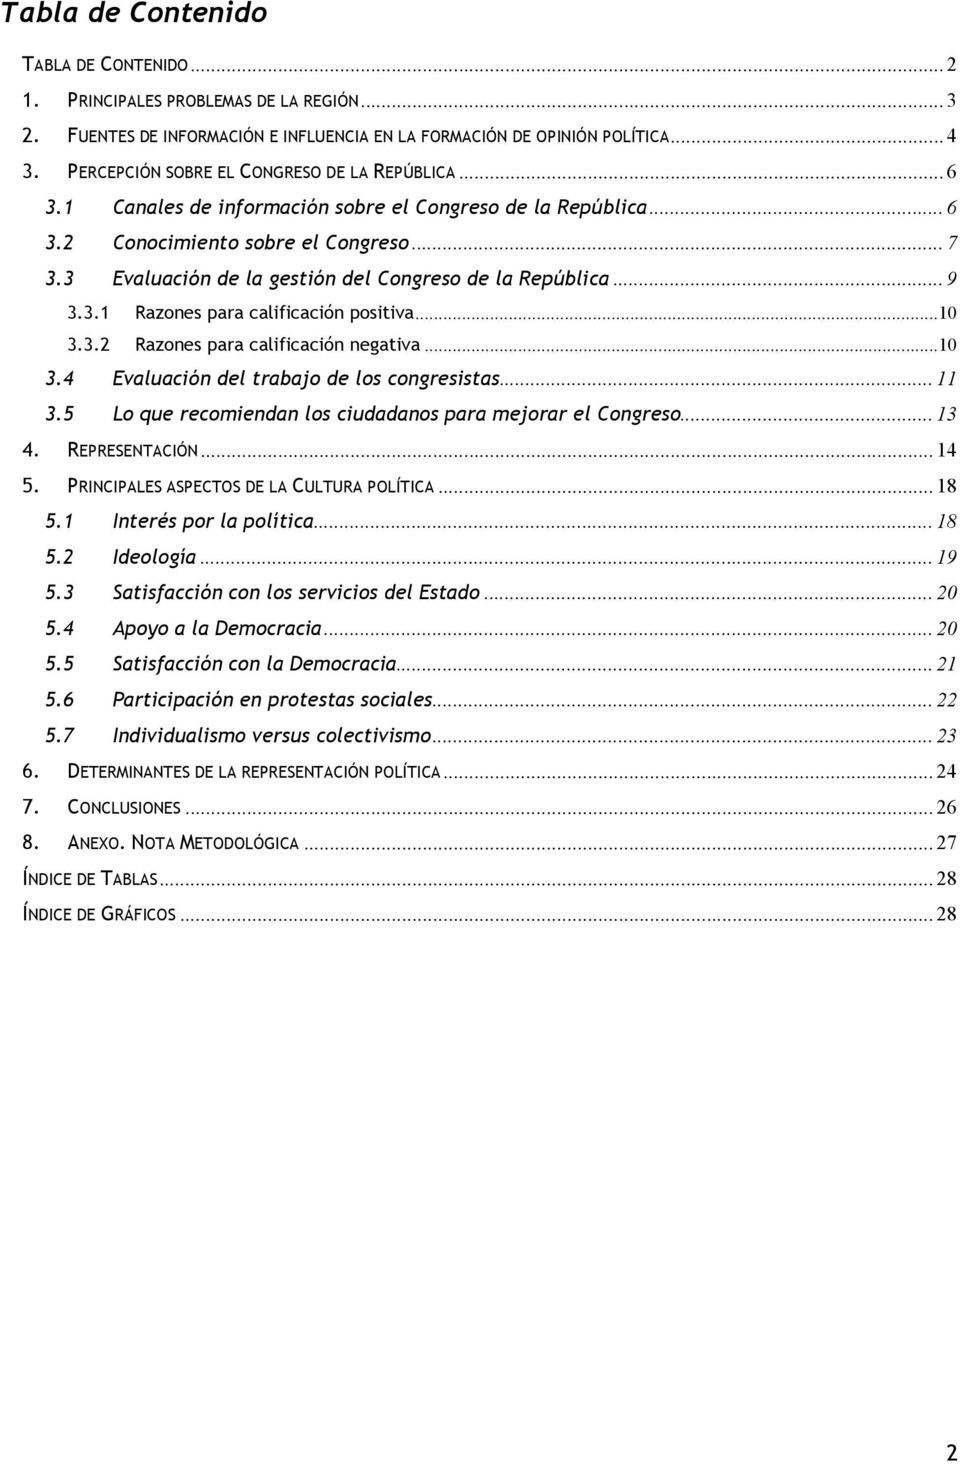 3 Evaluación de la gestión del Congreso de la República...9 3.3.1 Razones para calificación positiva... 3.3.2 Razones para calificación negativa... 3.4 Evaluación del trabajo de los congresistas...11 3.